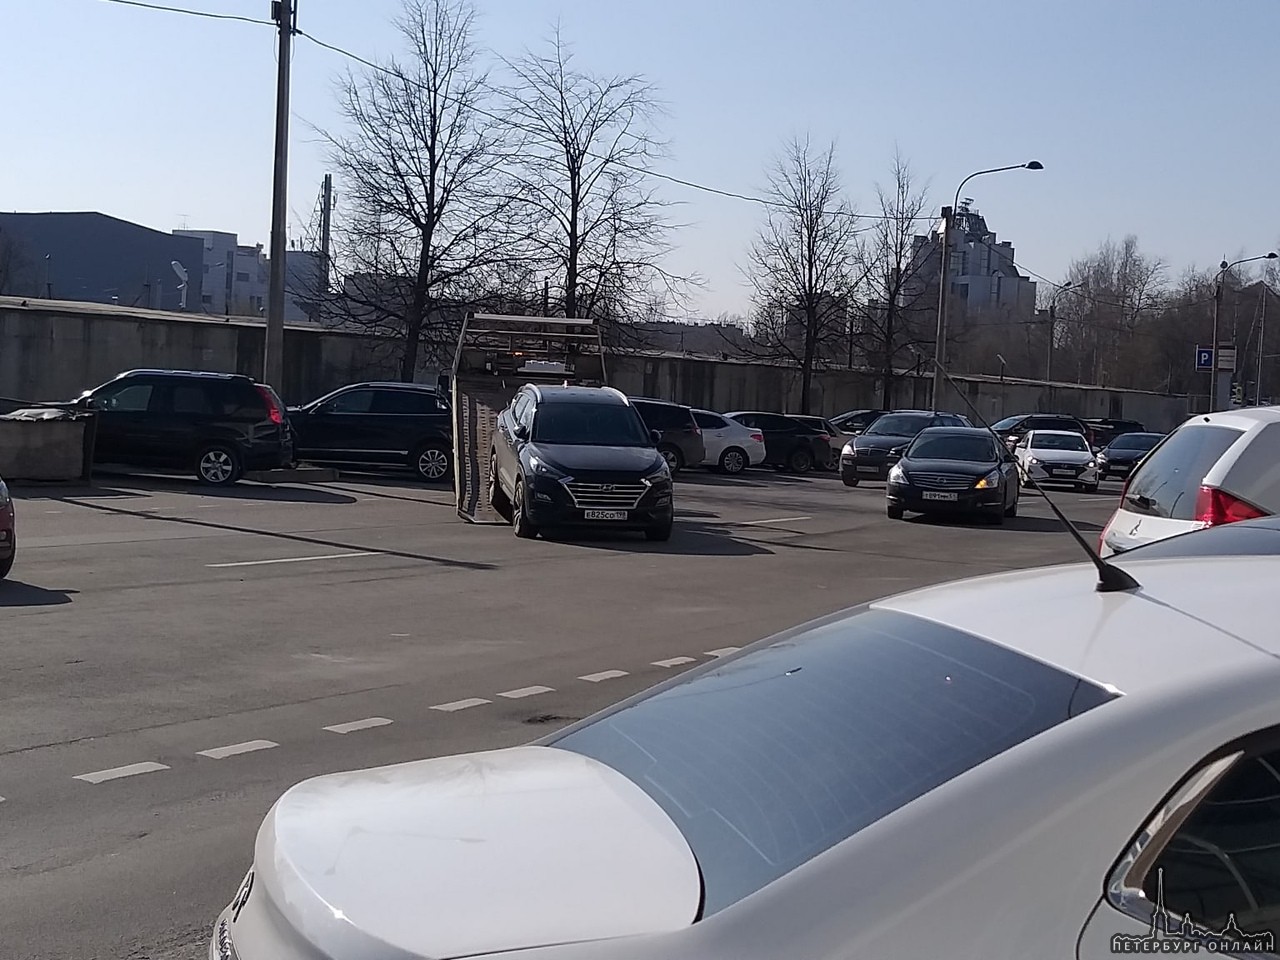 У Максидома на Гражданском 18А эвакуируют машины с середины проезжей части дороги по улице Фаворско...